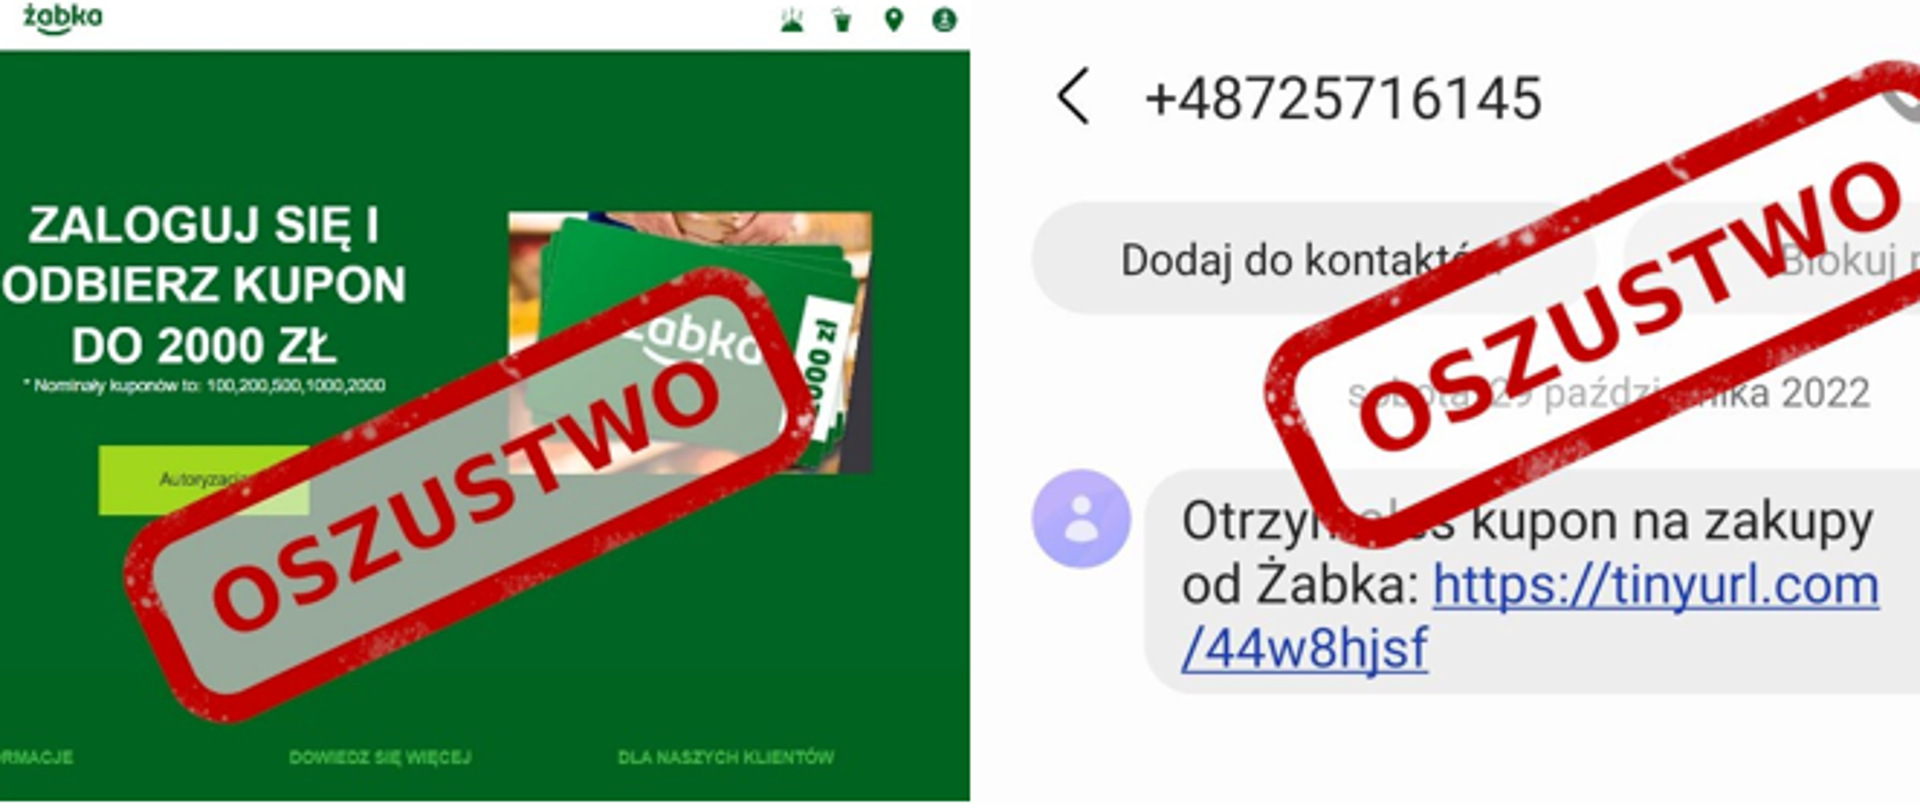 Zdjęcie fałszywego sms Otrzymałeś kupon na zakupy od Żabka https://tinyurl.com/44w8hjsf